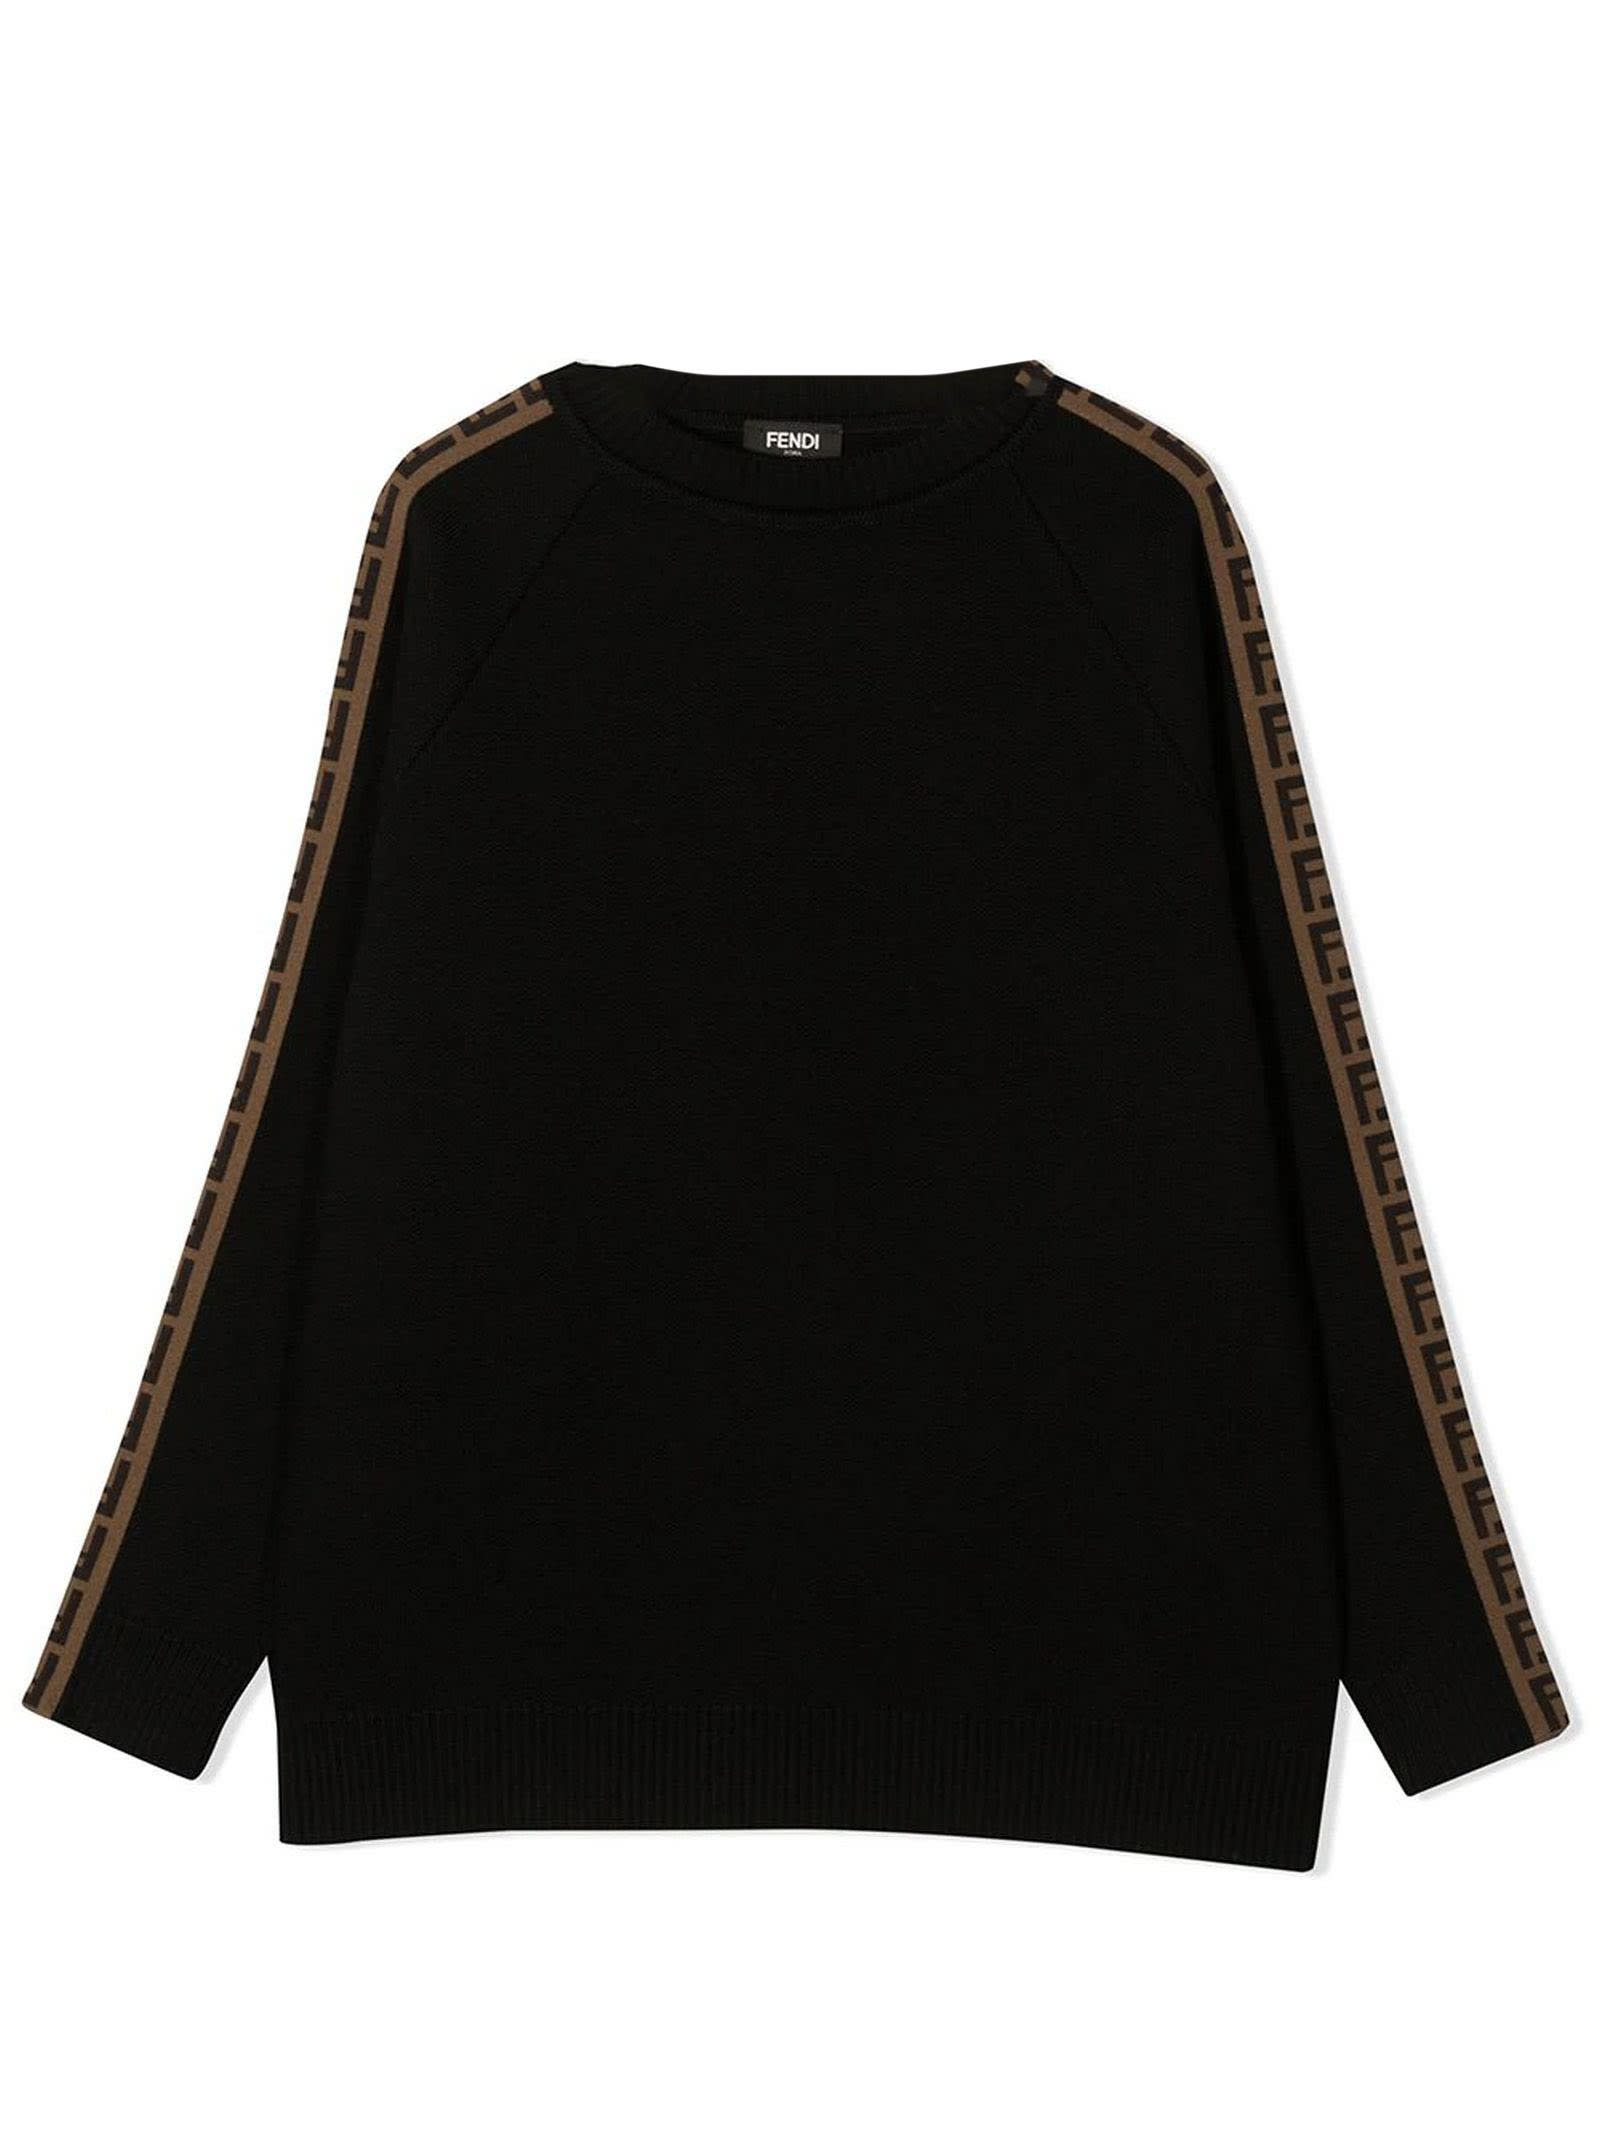 Fendi Black Virgin Wool Sweatshirt